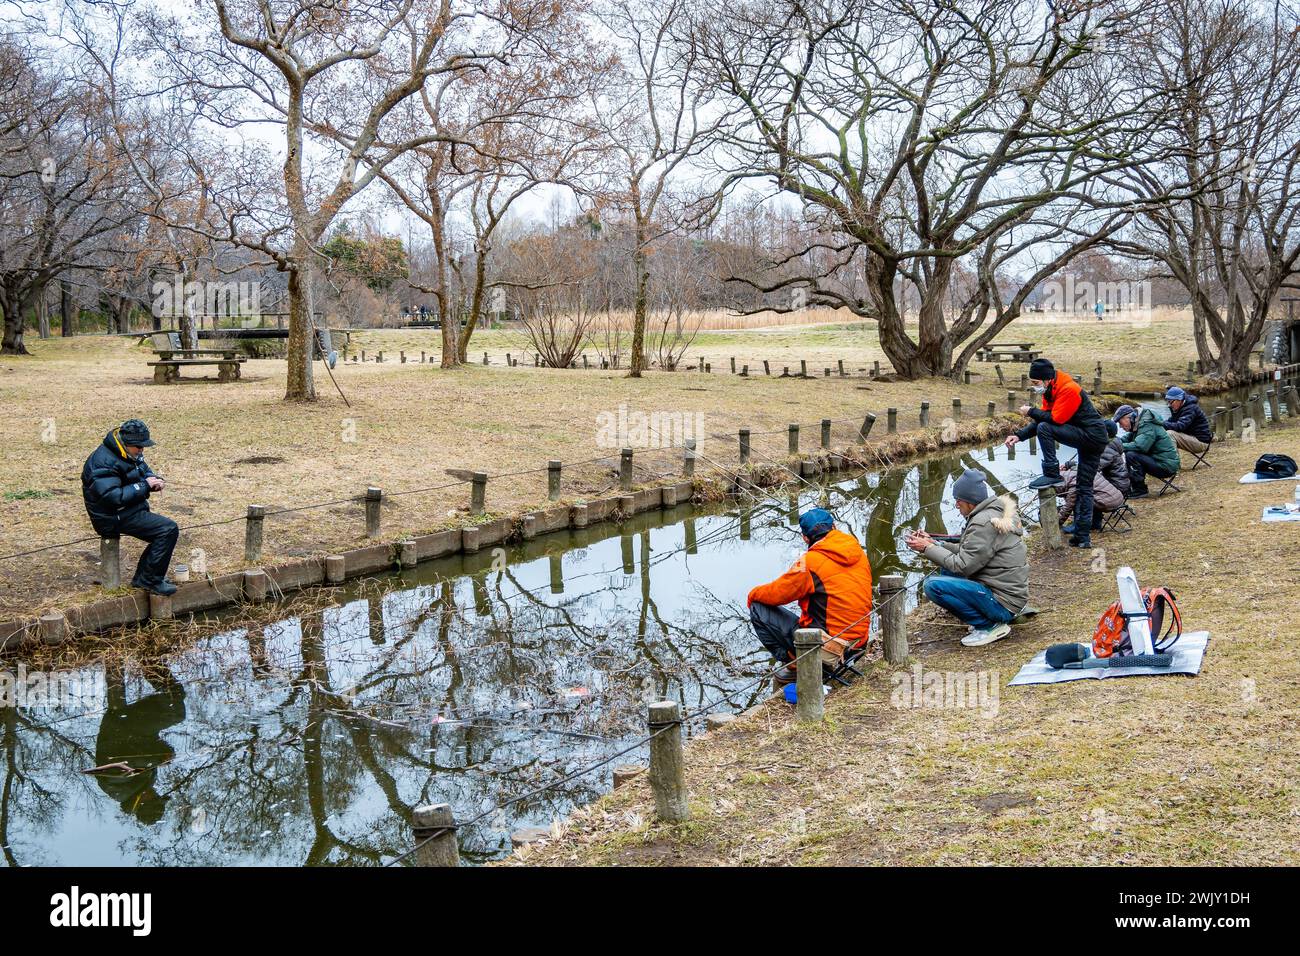 Les habitants pêchent au parc Mizumoto (都立水元公園). Tokyo, Japon. Banque D'Images